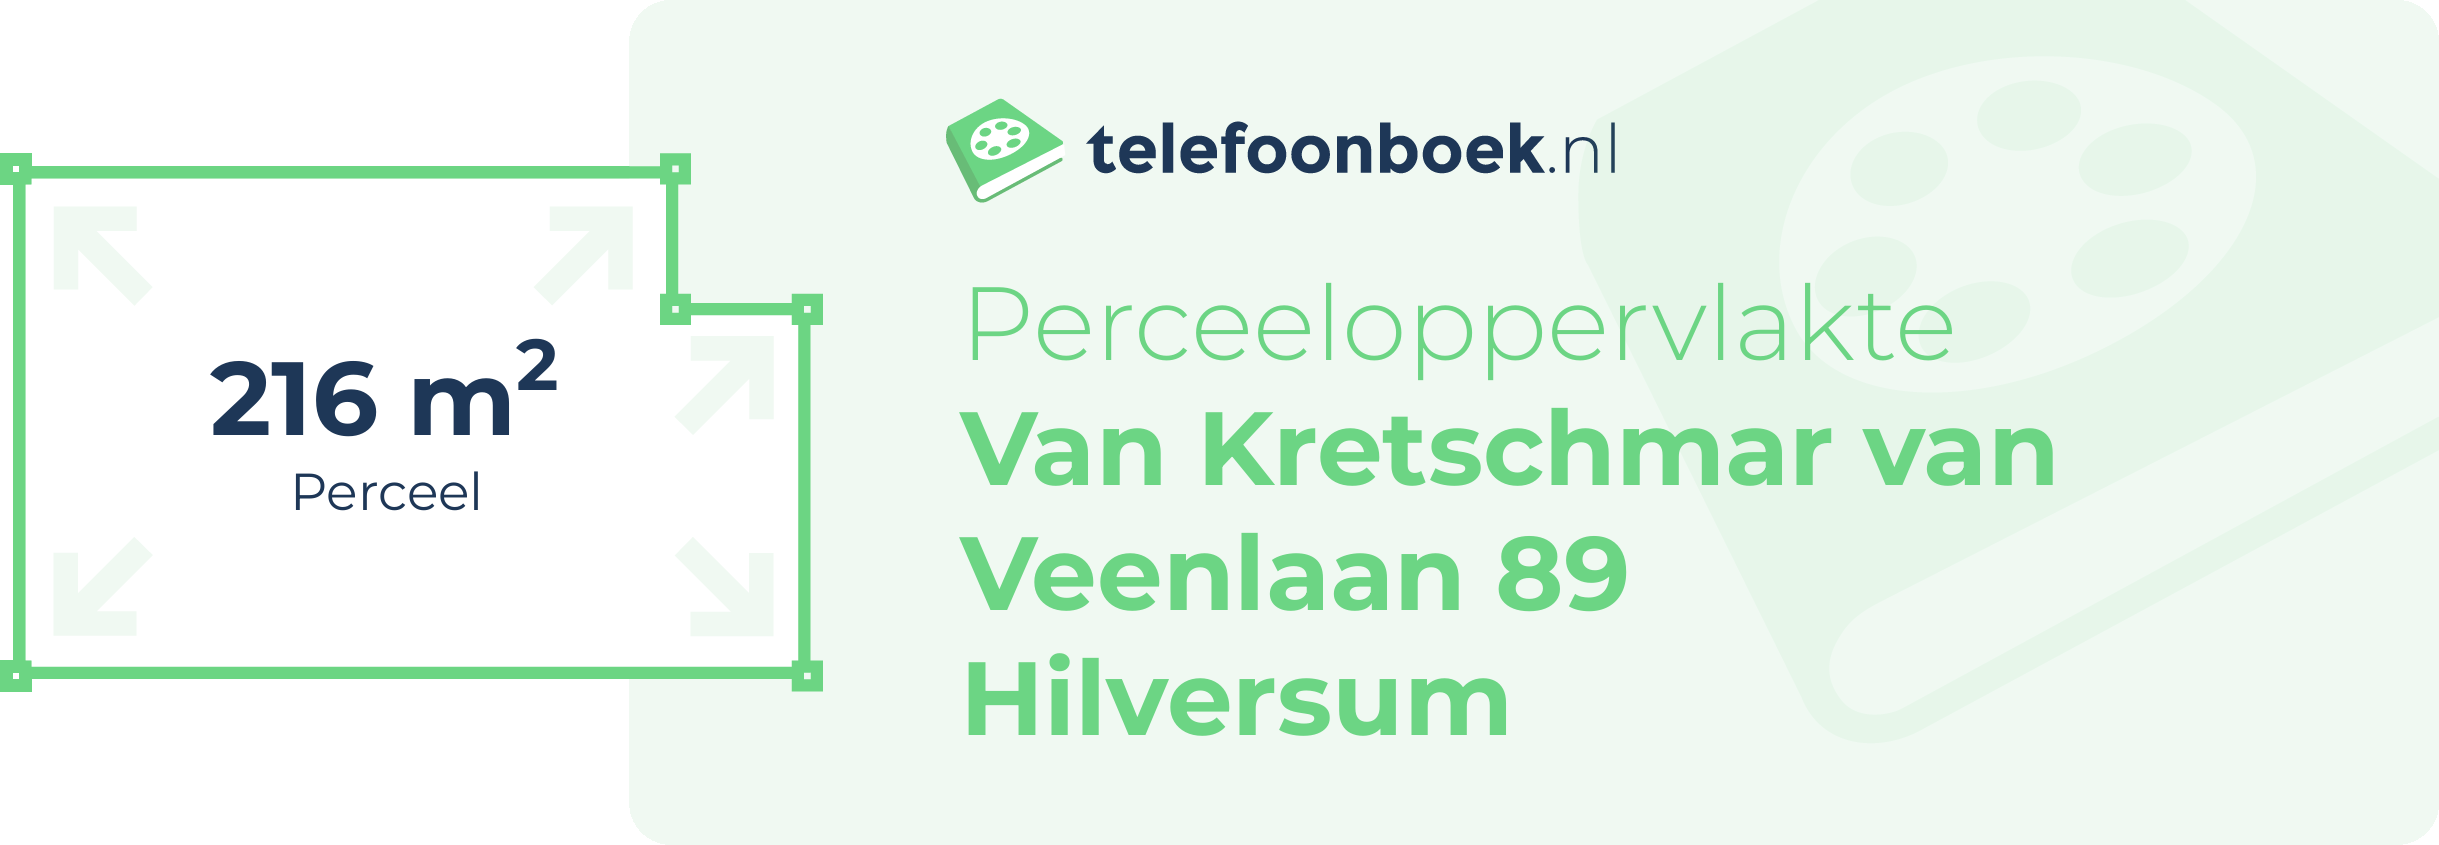 Perceeloppervlakte Van Kretschmar Van Veenlaan 89 Hilversum